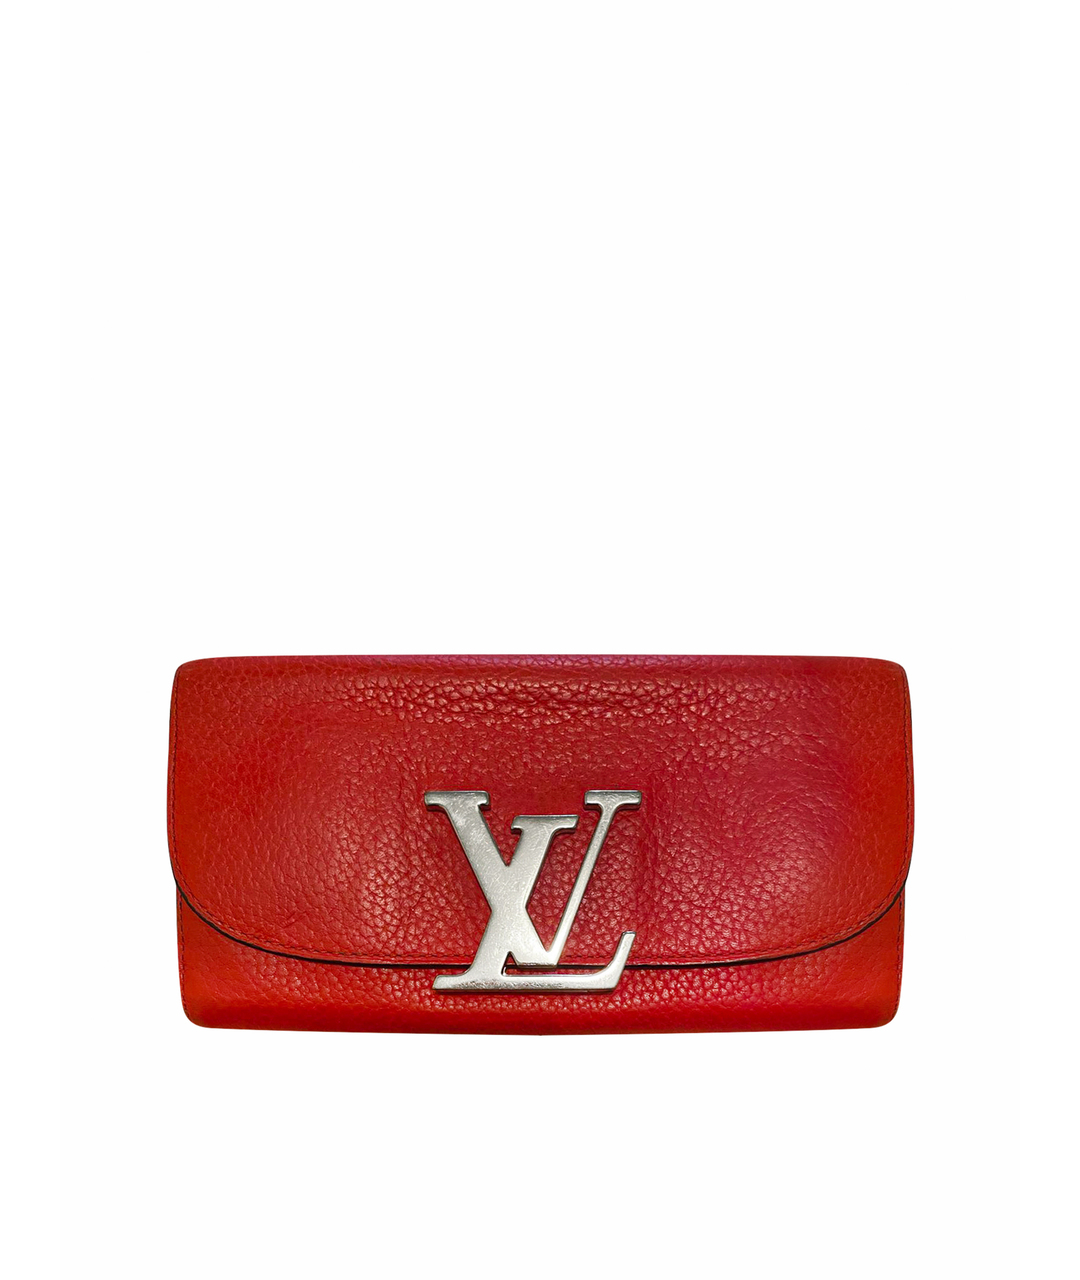 LOUIS VUITTON PRE-OWNED Красный кожаный кошелек, фото 1